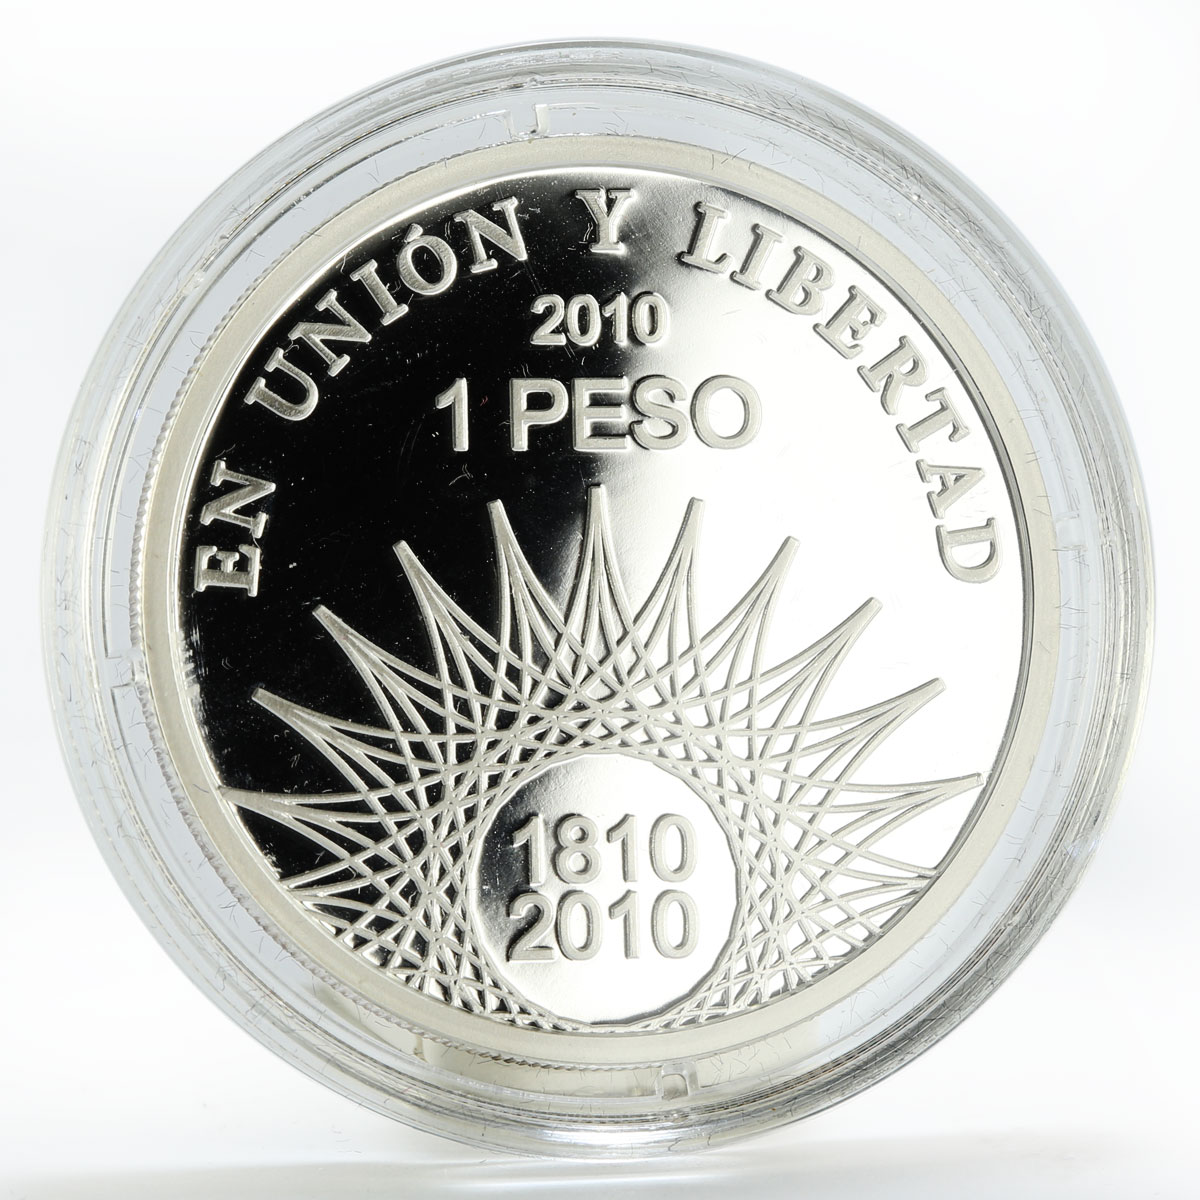 Argentina 1 peso Pucara de Tilcara proof silver coin 2010